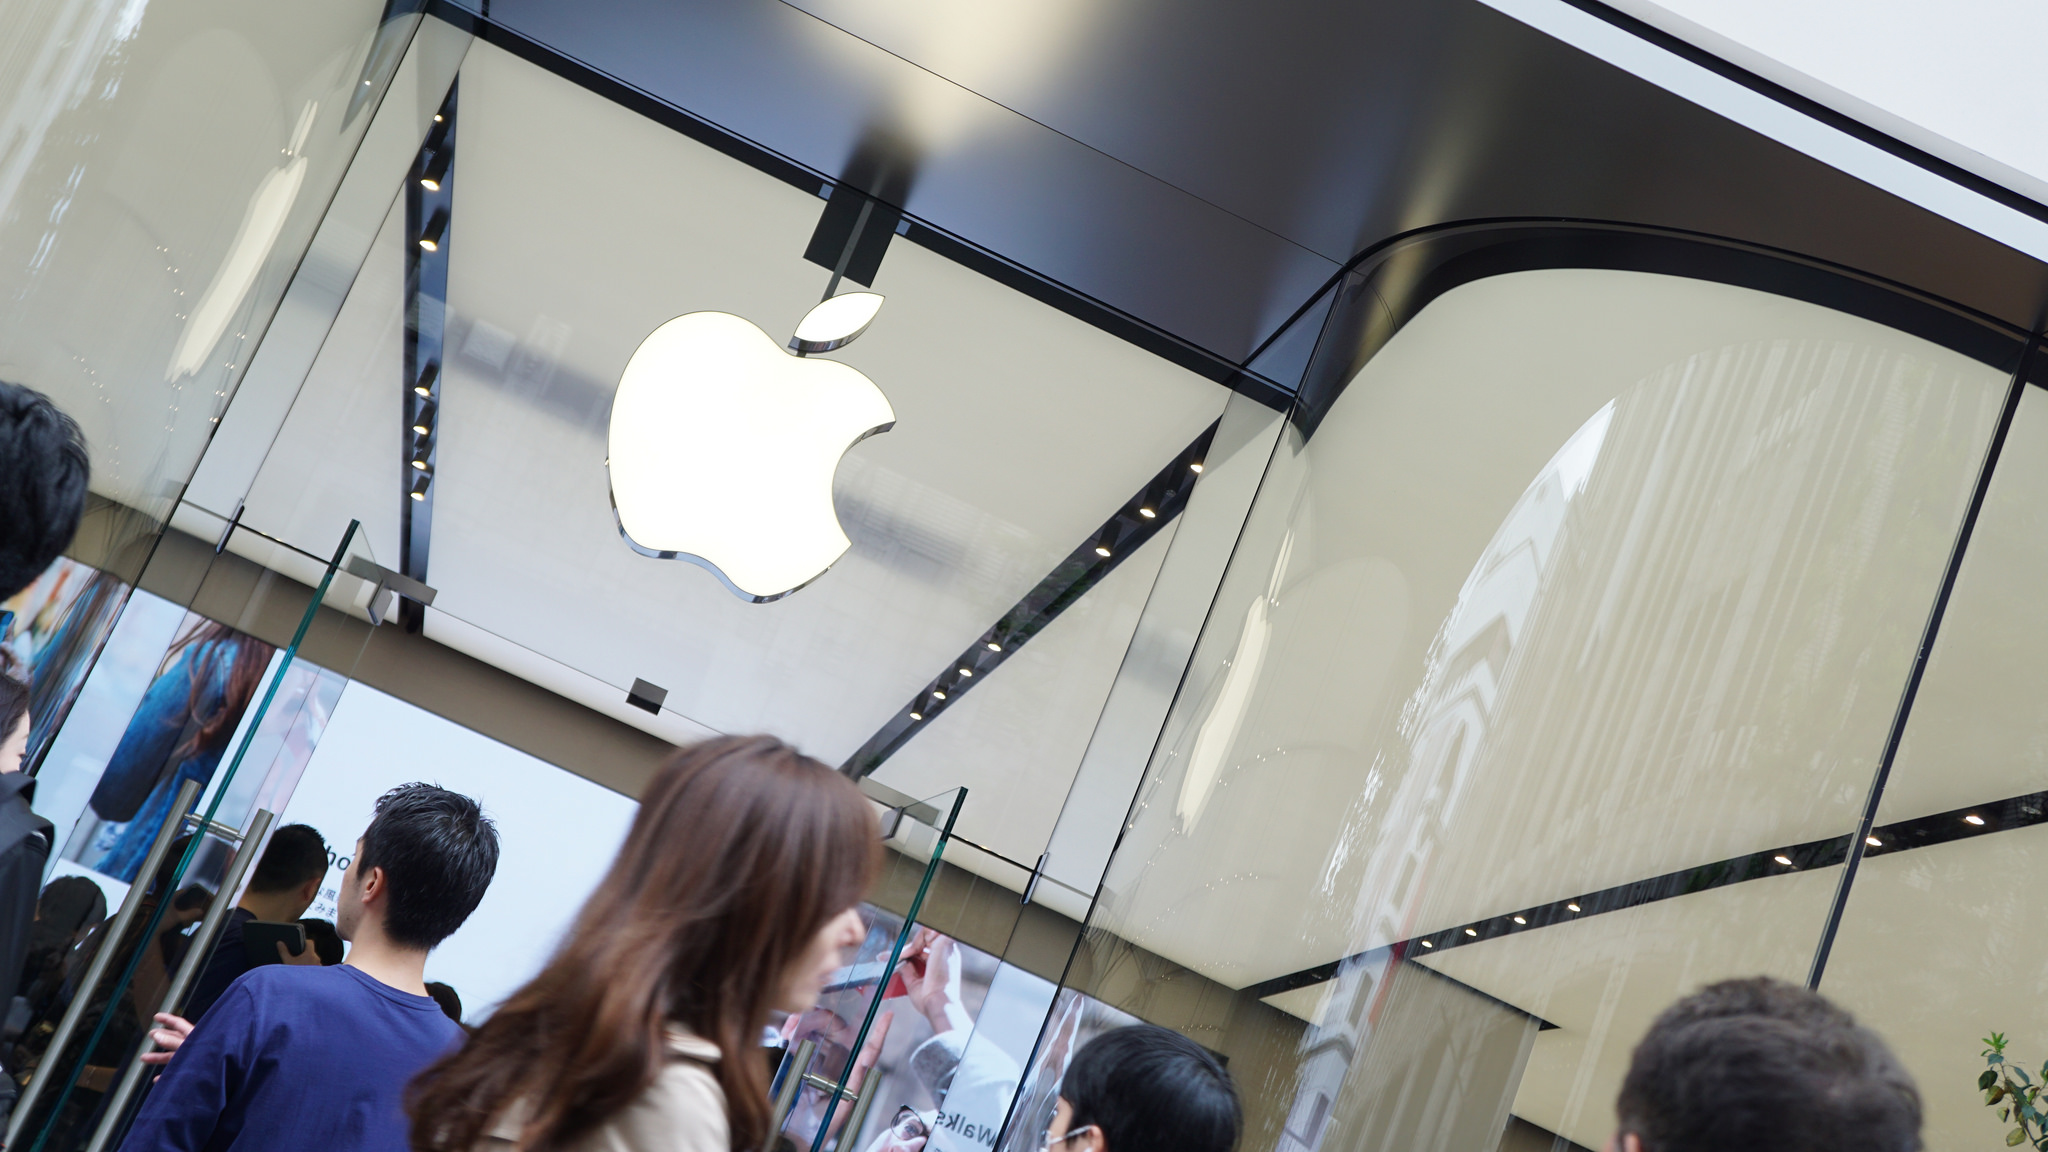 最新デザインのApple Store「Apple新宿」がオープン。1000人の行列、記念品の配布終了